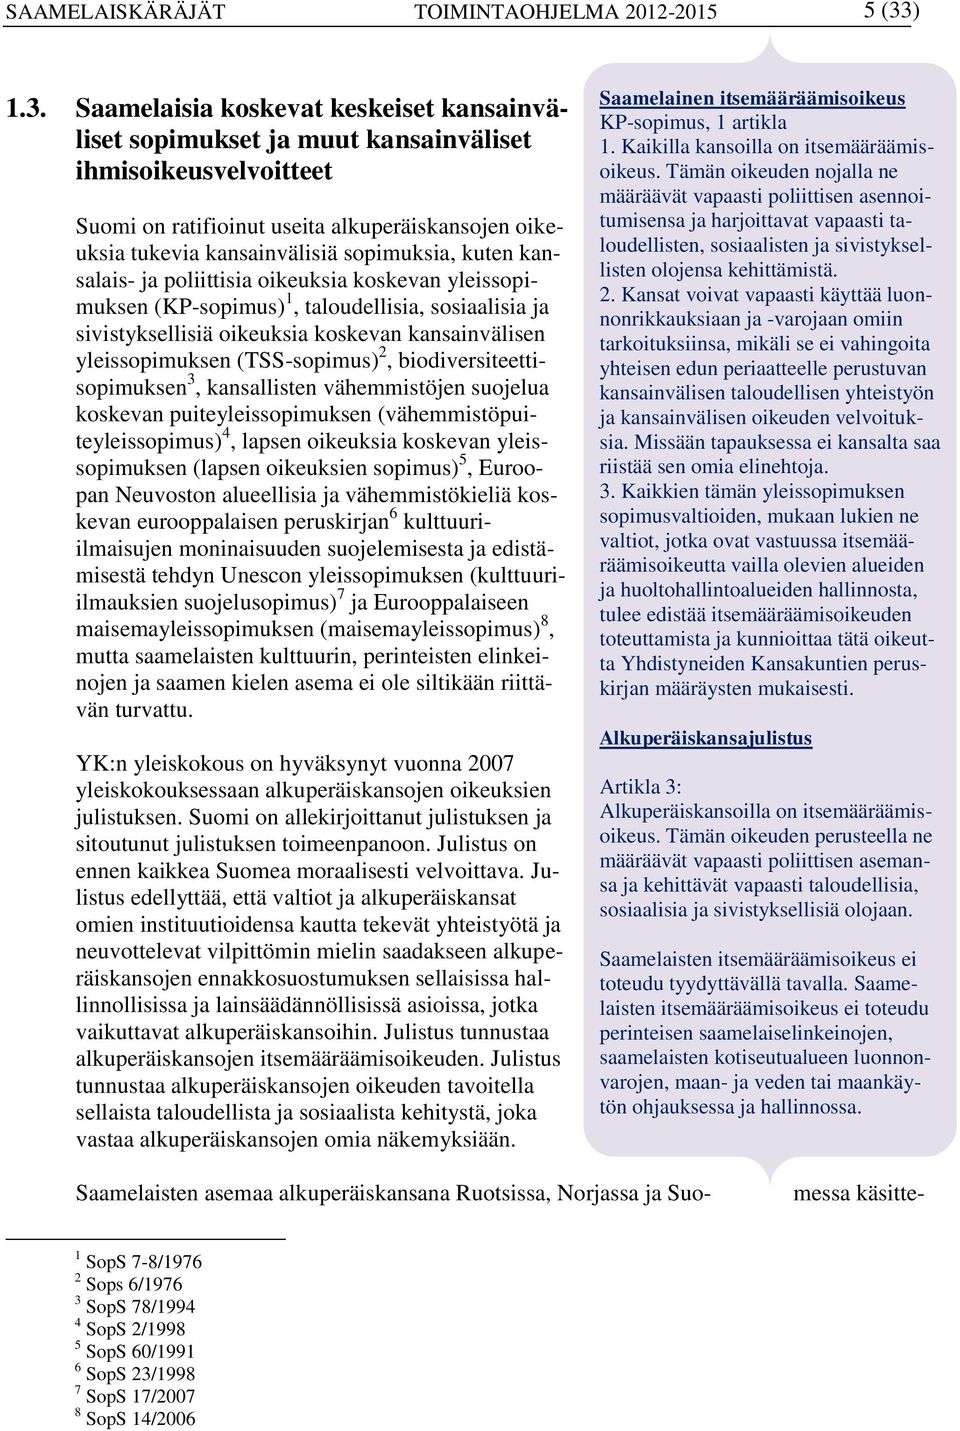 Saamelaisia koskevat keskeiset kansainväliset sopimukset ja muut kansainväliset ihmisoikeusvelvoitteet Suomi on ratifioinut useita alkuperäiskansojen oikeuksia tukevia kansainvälisiä sopimuksia,